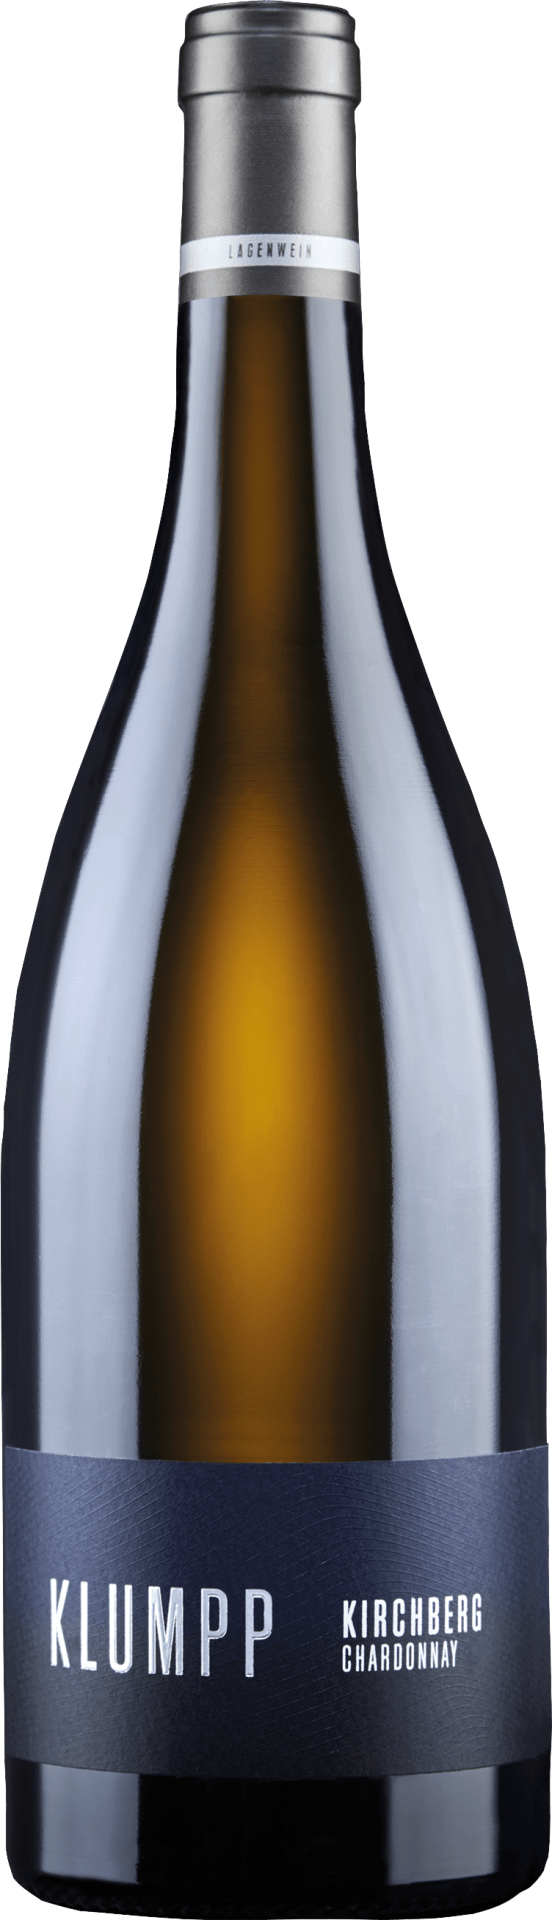 Unteröwisheimer Kirchberg Chardonnay QbA trocken